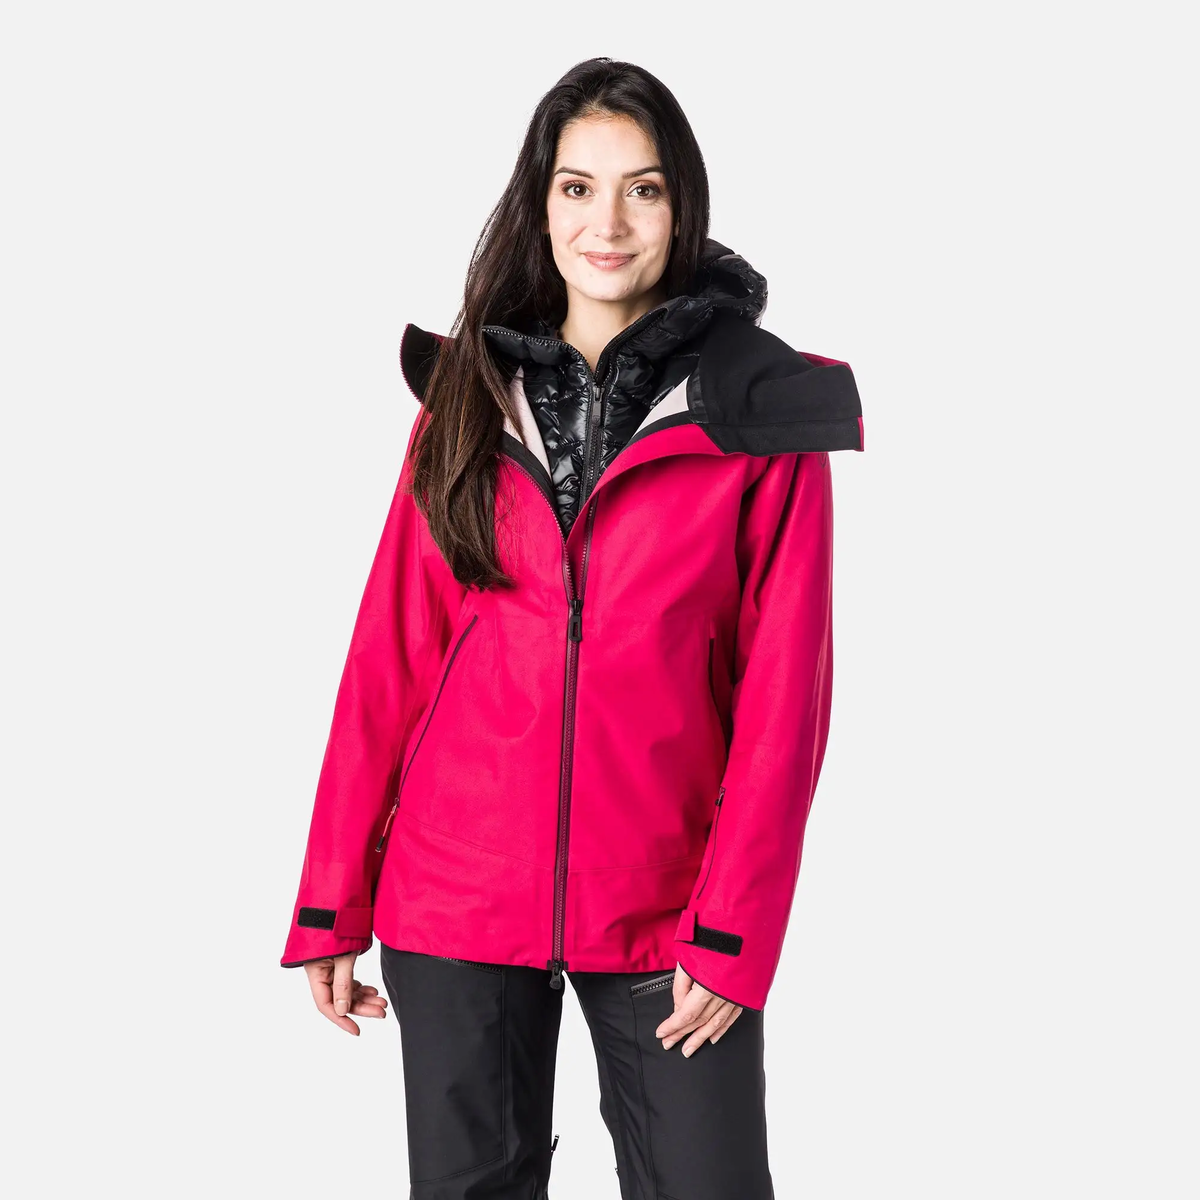 Alfabetische volgorde idee Onderzoek Rossignol SKPR 3L ski jas roze dames – Snowsuits